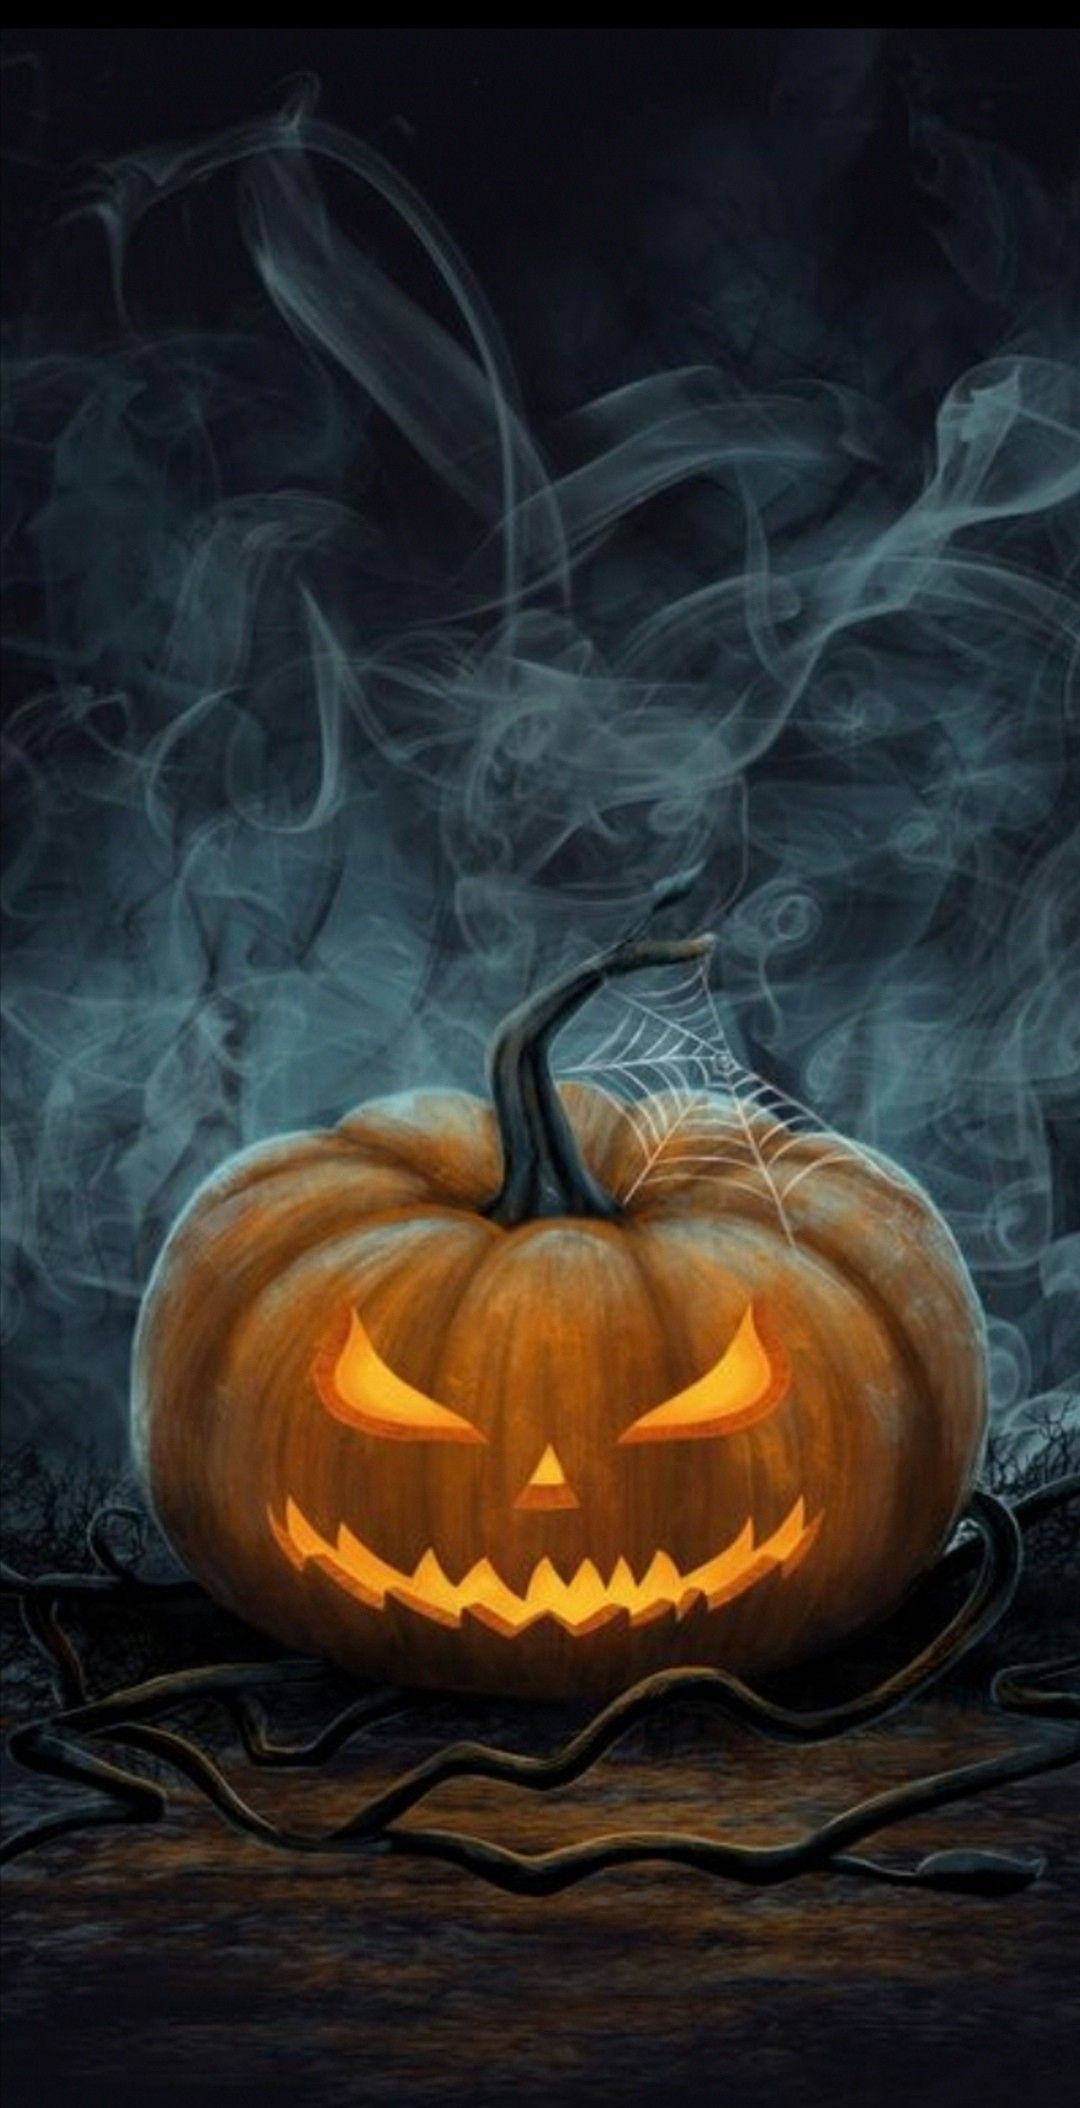 Zusammenfassung von 25 Geister-Hintergrundbildern für Halloween